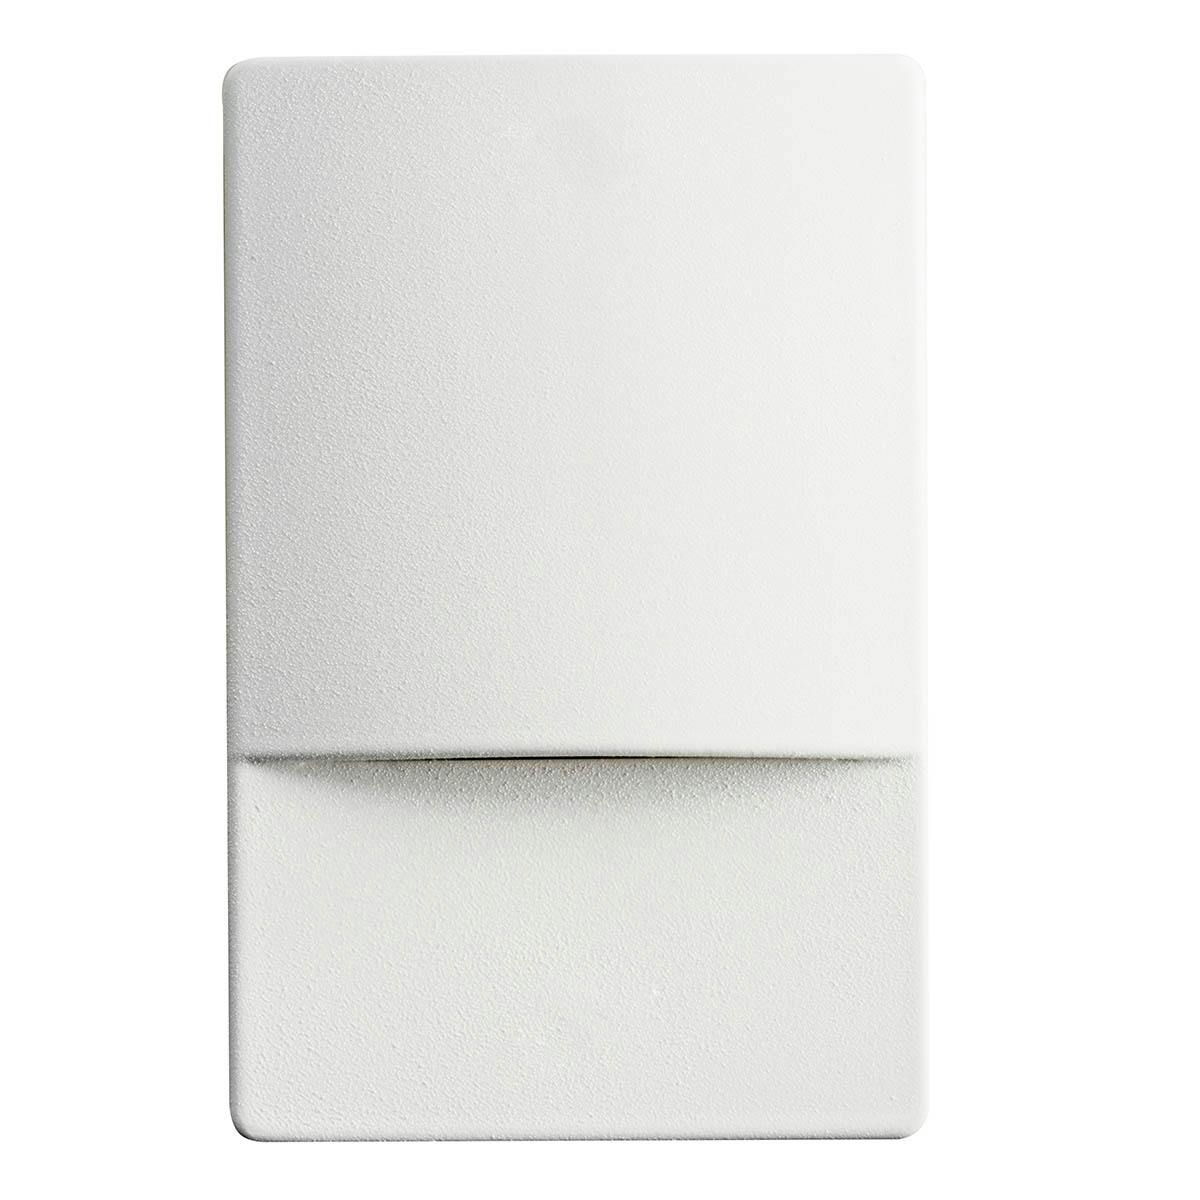 5" Vertical White LED Step Light on a white background